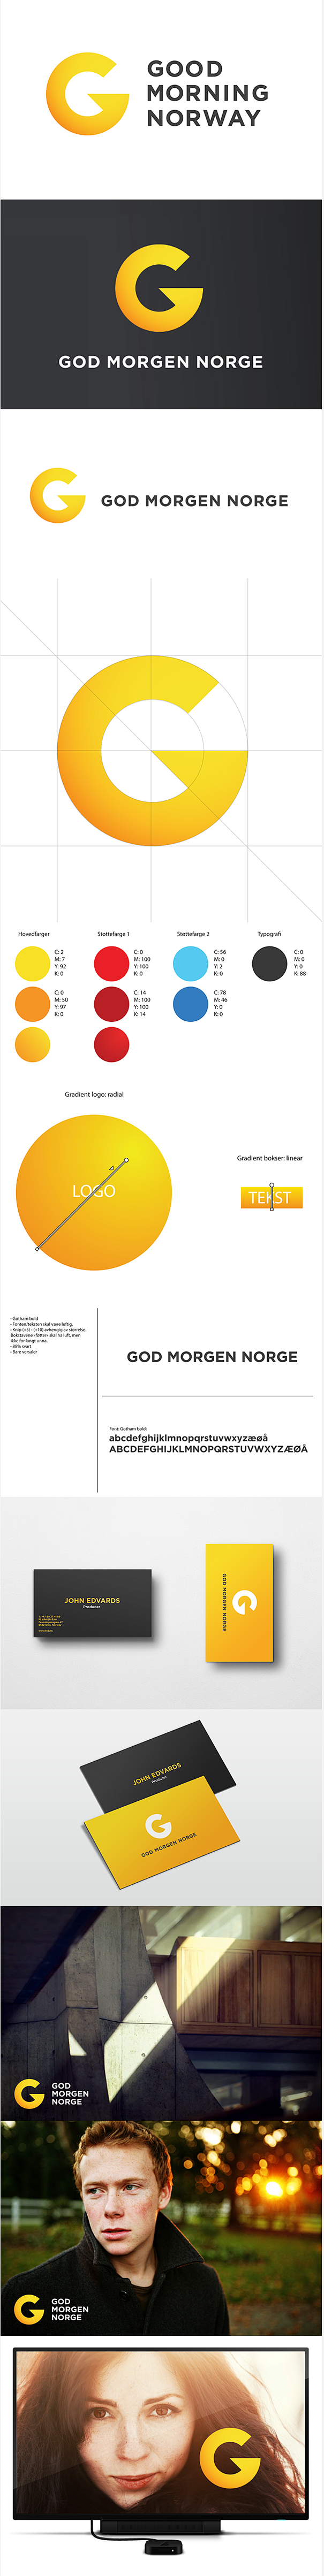 早安挪威电视节目品牌标志设计/G字母标志...